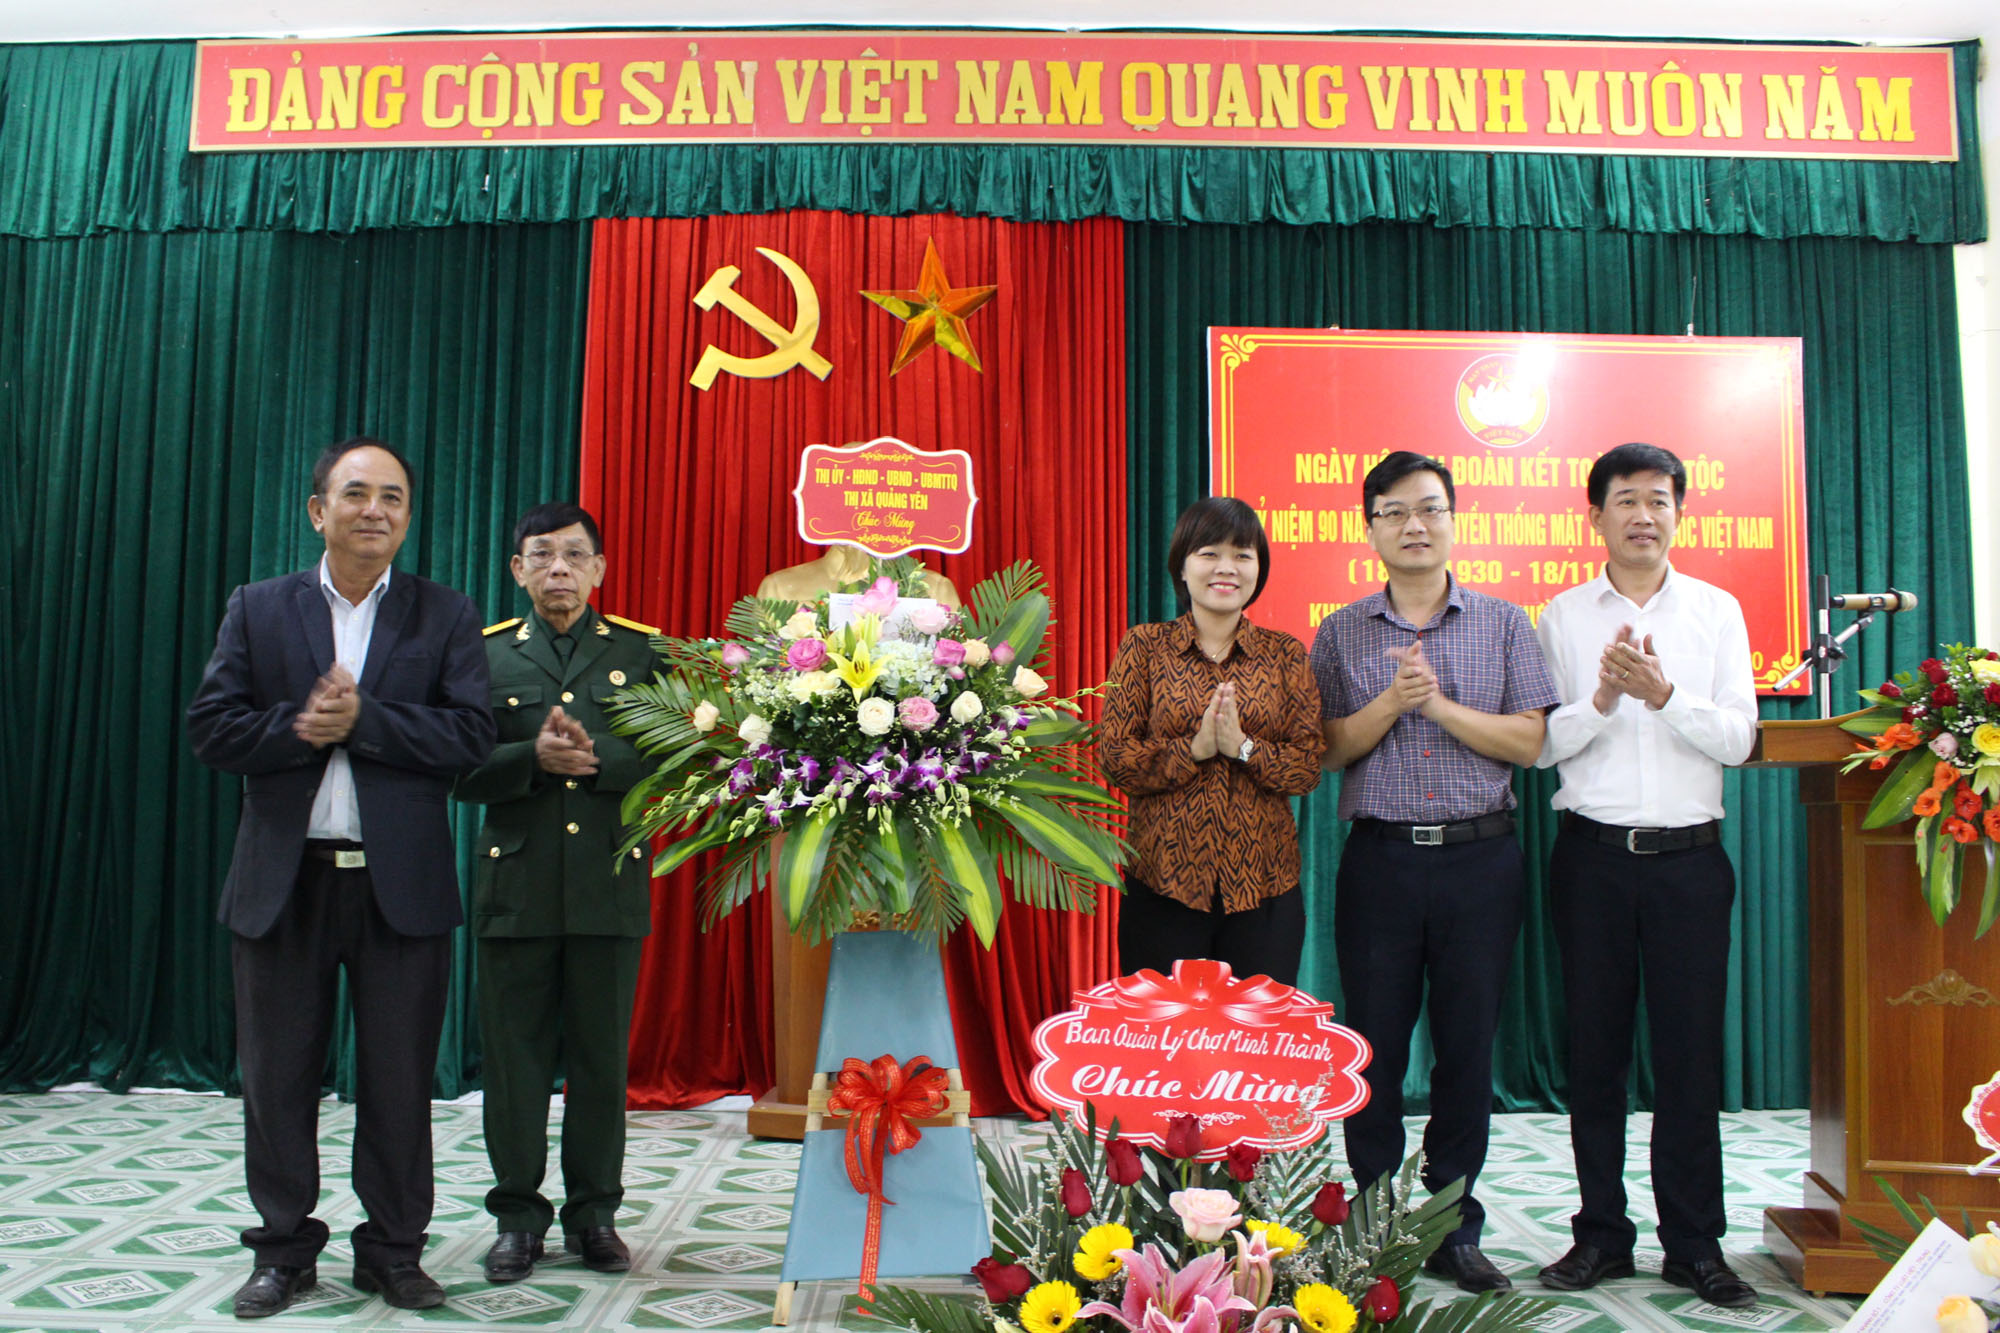 Đồng chí Vũ Thị Diệu Linh, ủy viên BCH Đảng bộ TX Quảng Yên, Phó Chủ tịch UBND TX Quảng Yên